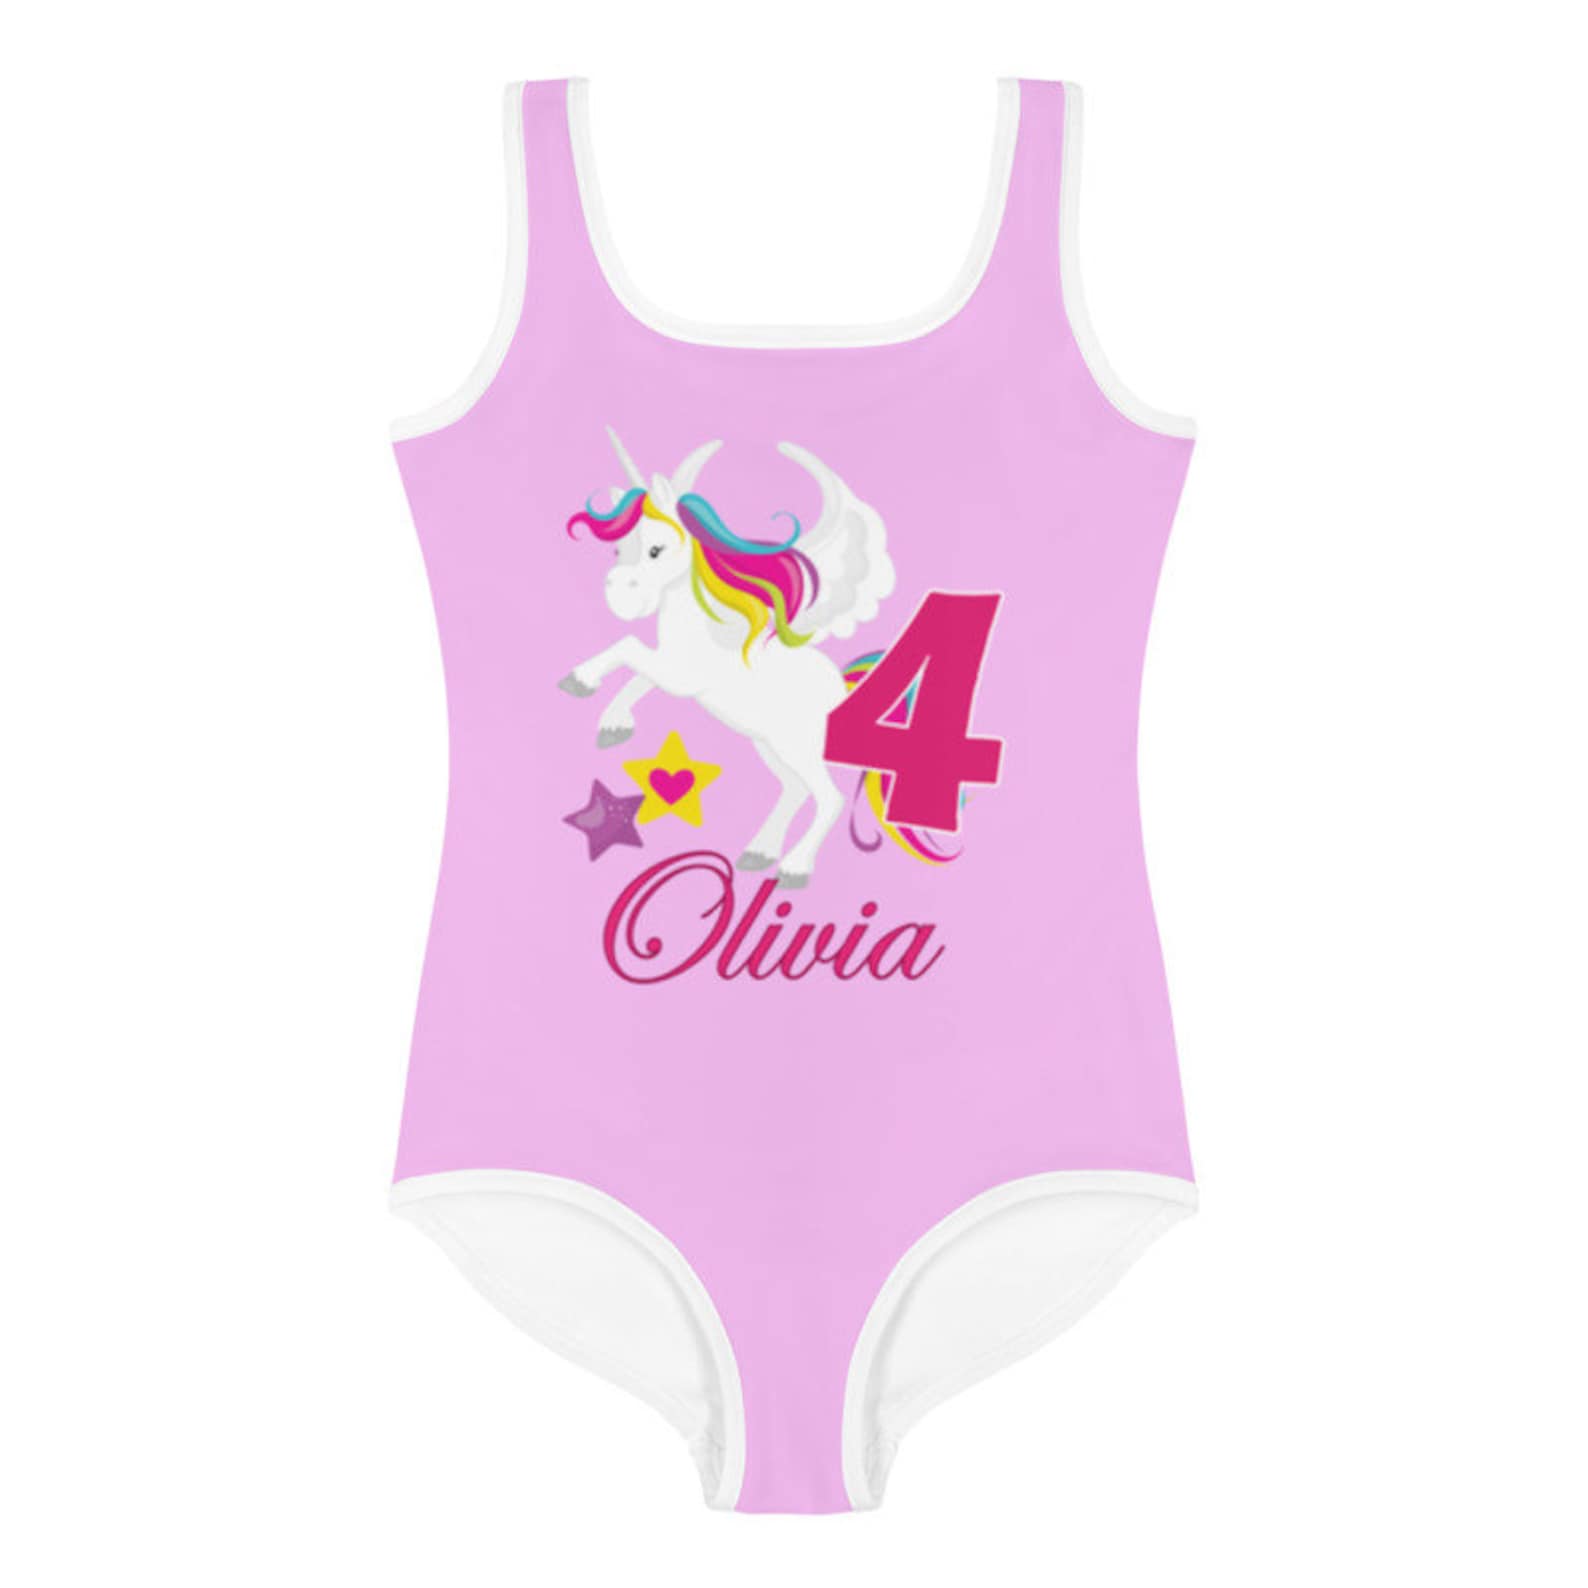 Unicorn Swimsuit For Girls Birthday Swimsuit One Piece Etsy Uk